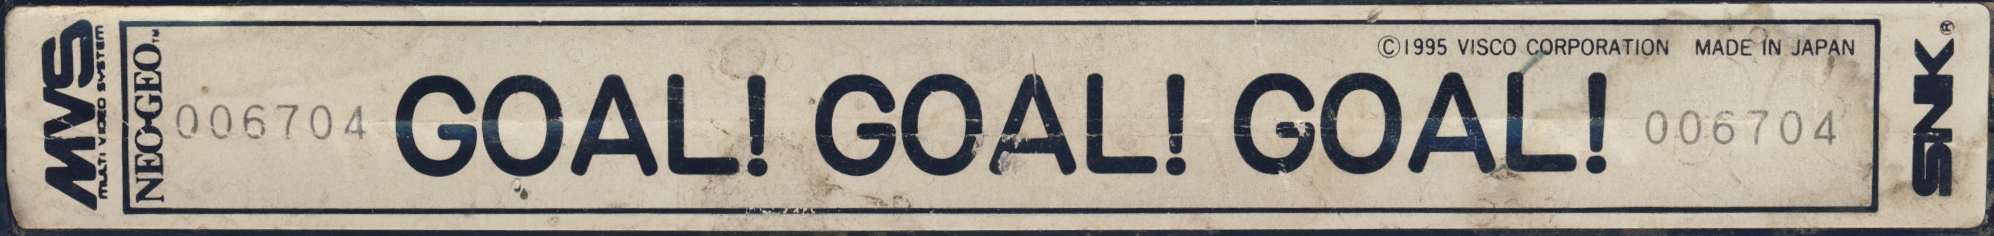 Goal goal goal us label.jpg